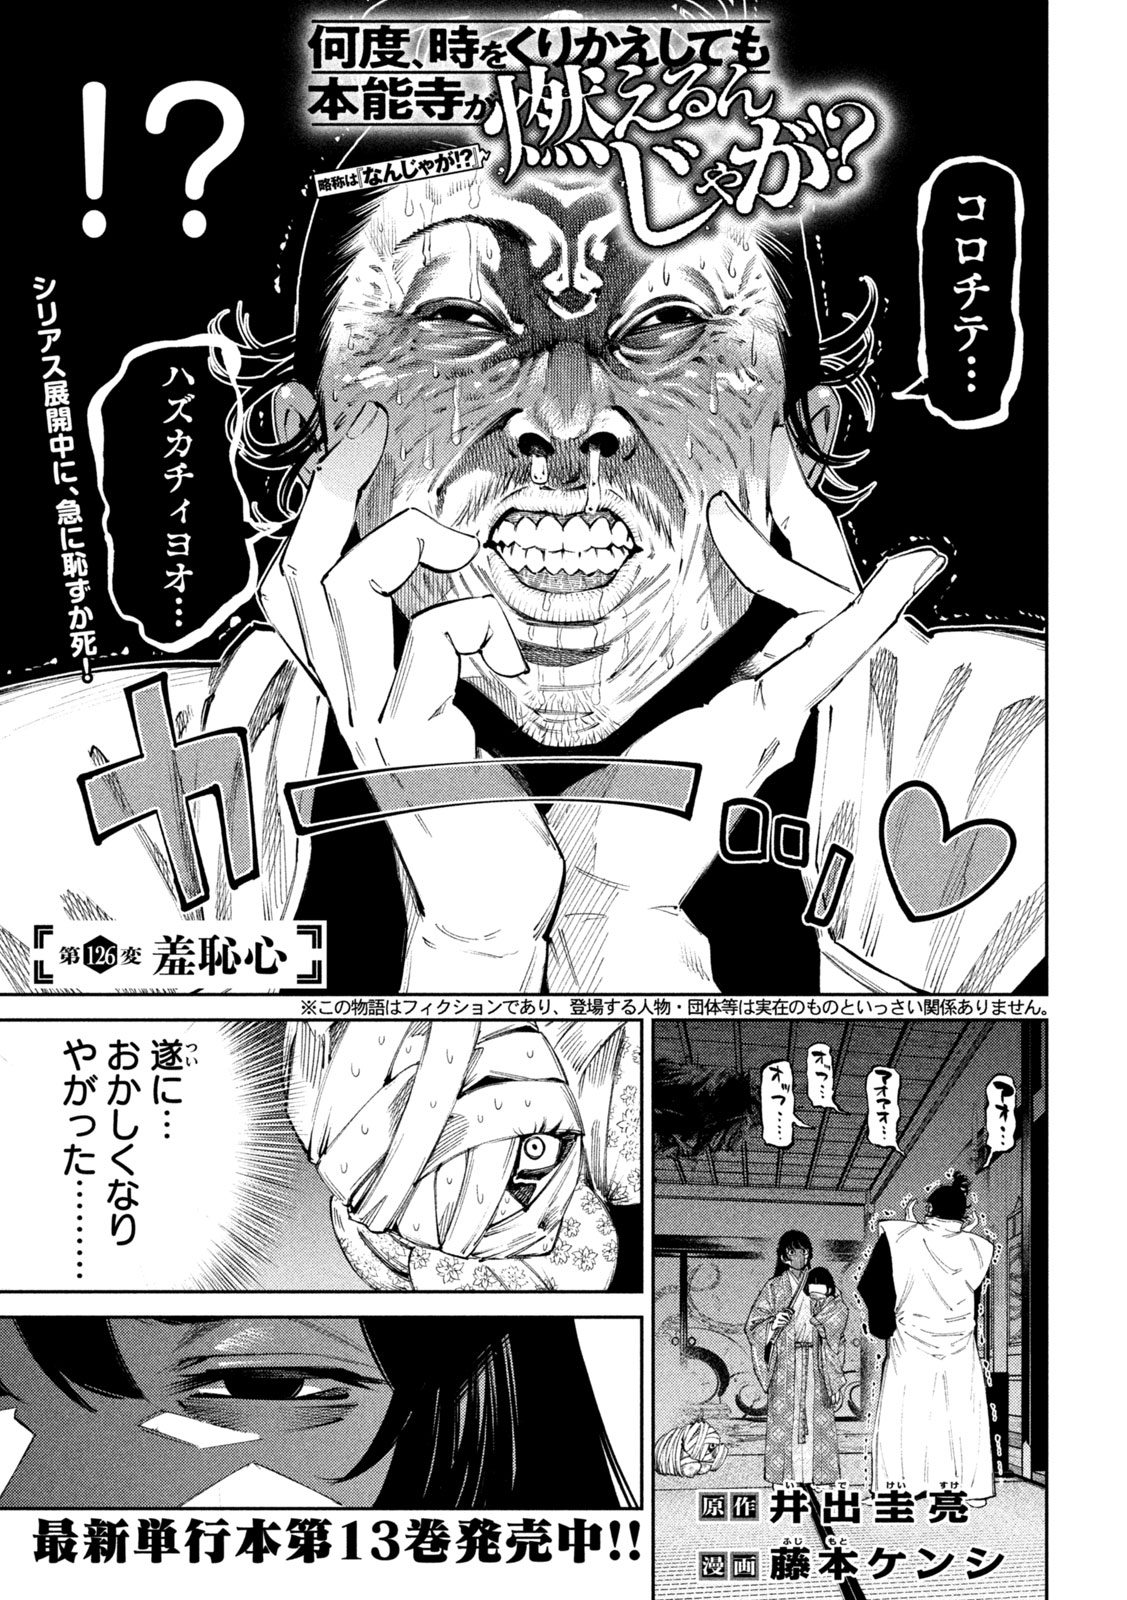 Nando toki o kurikaeshitemo Honnouji ga moerunjaga! - Chapter 126 - Page 2